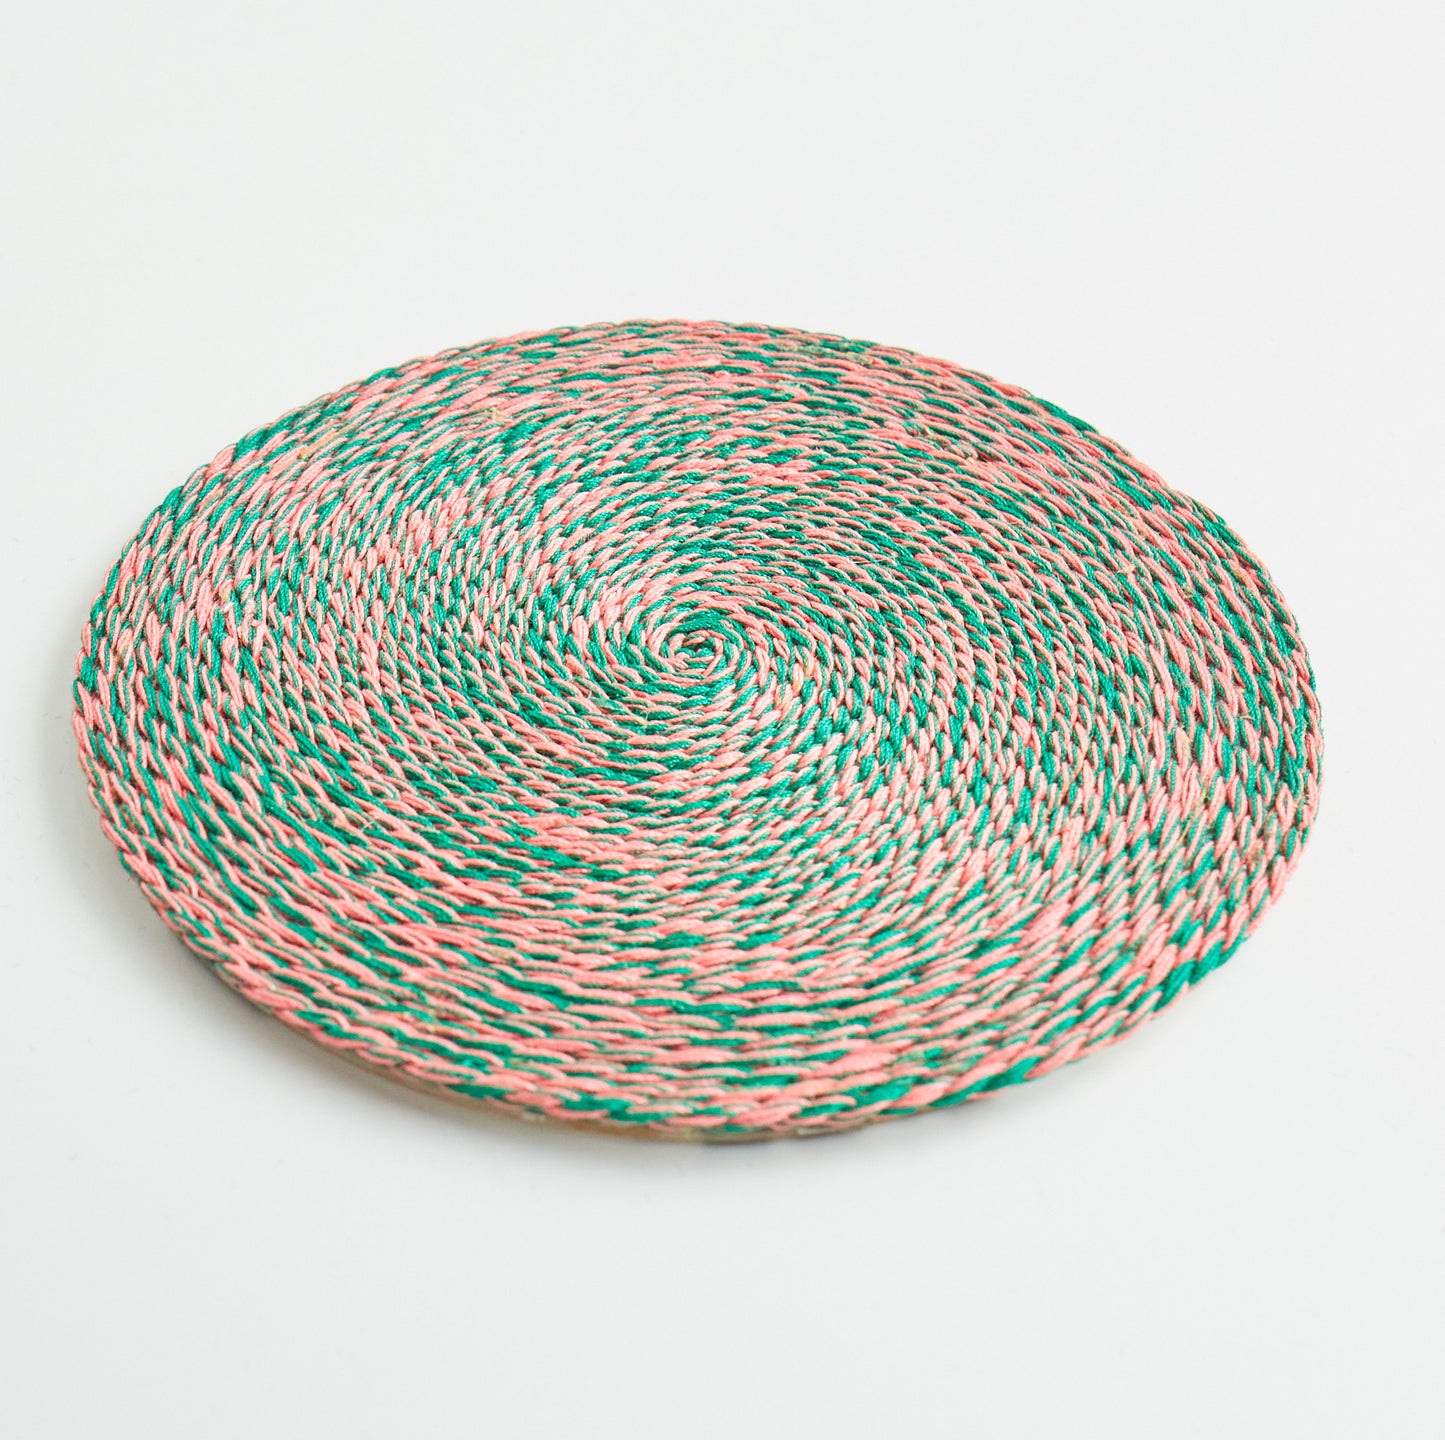 Thread Yarn Coaster